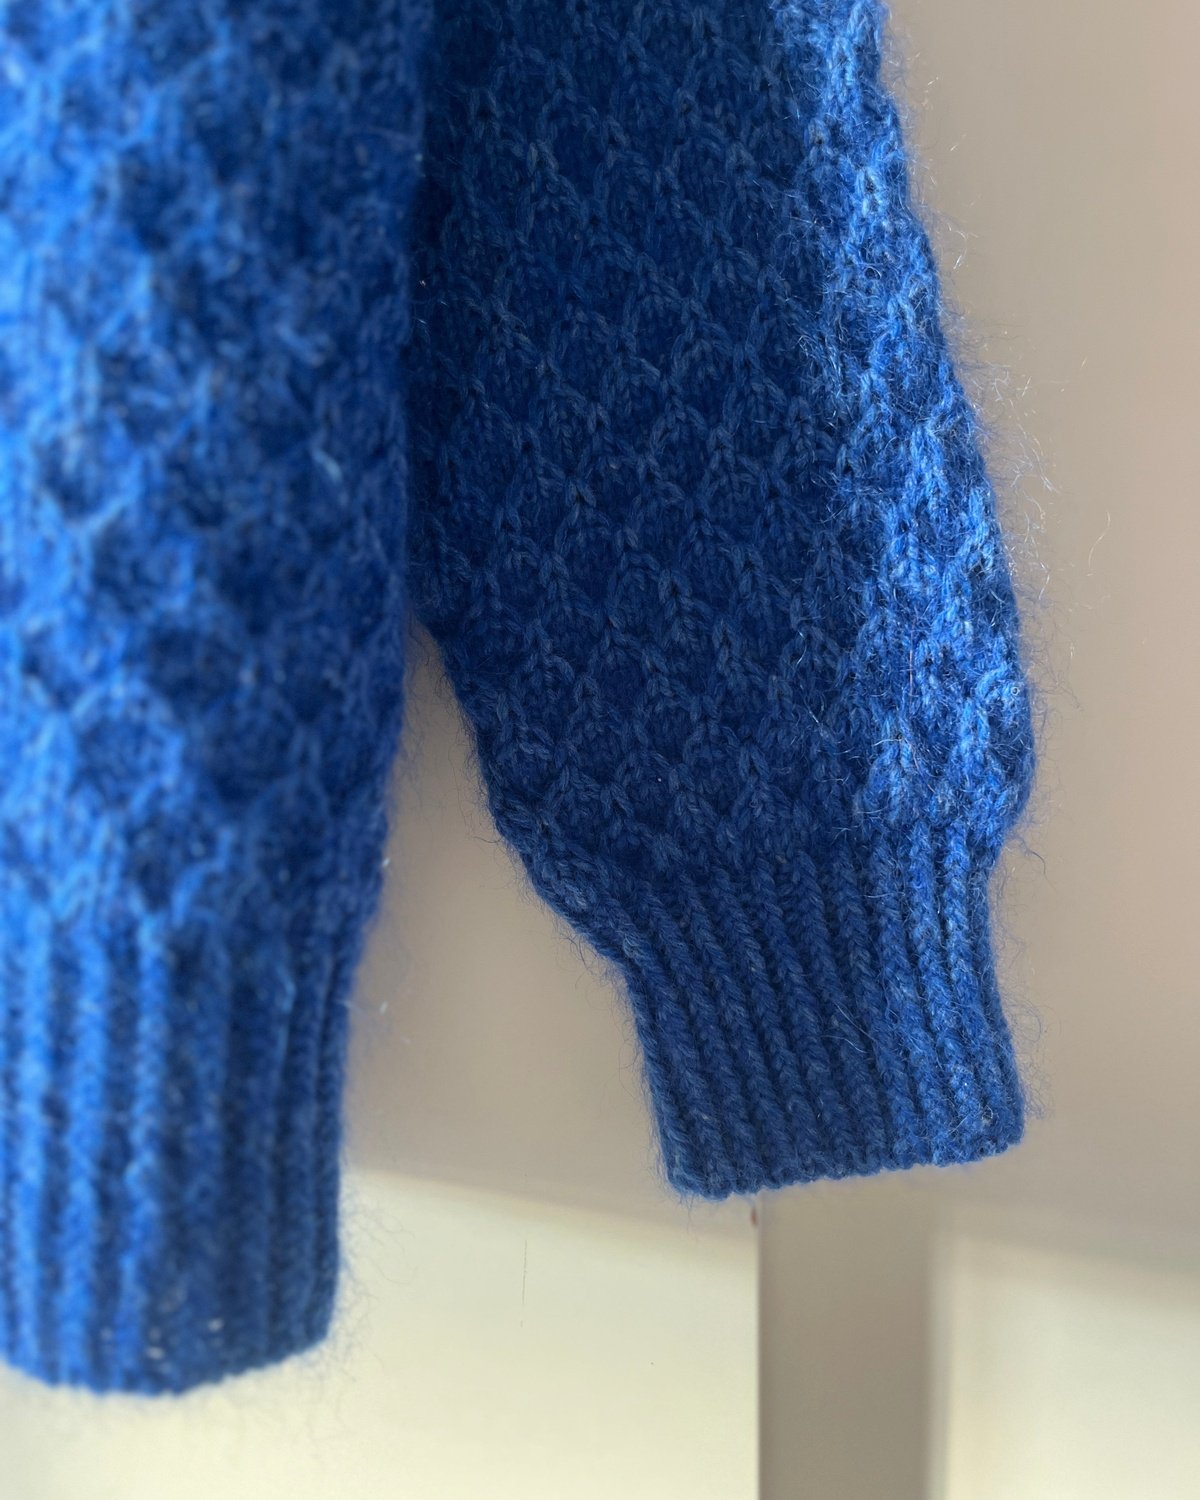 Formation Sweater Man Norsk Popknit strikkeoppskrift